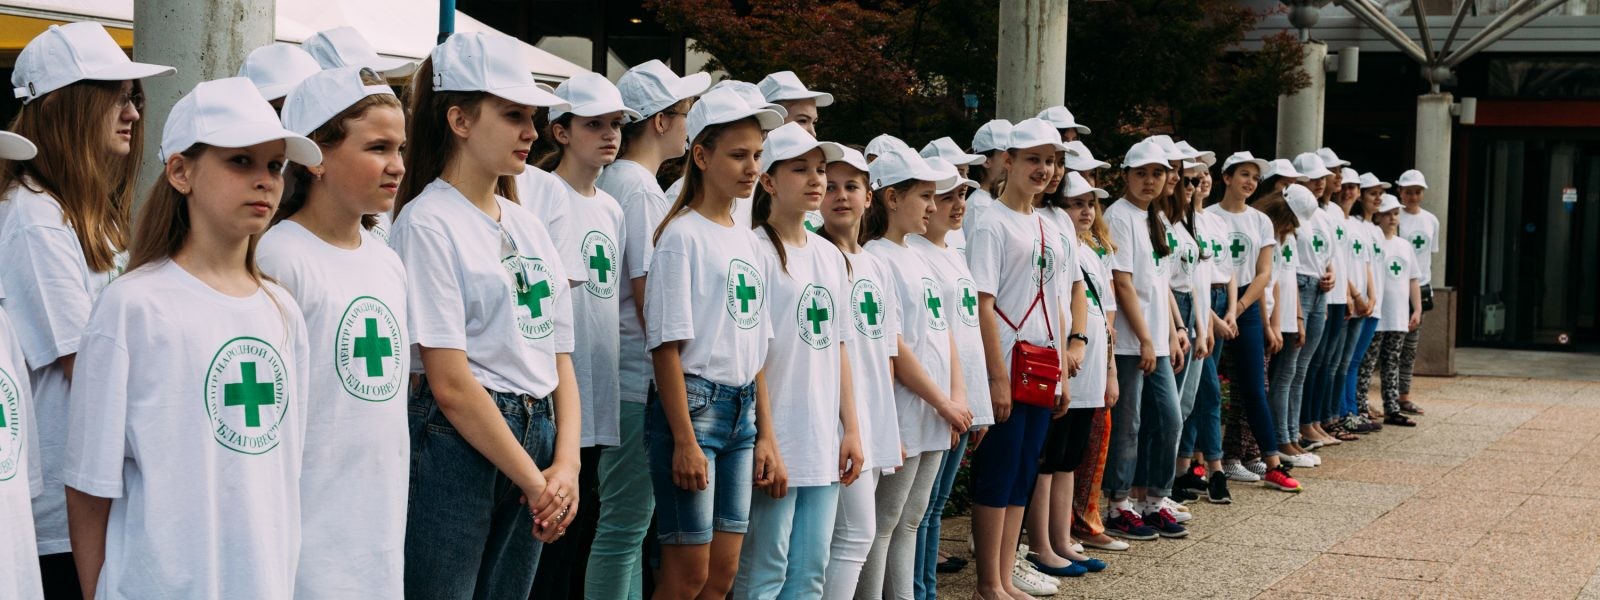 Ruski otroci na organiziranih počitnicah v Sloveniji, Dolenjske toplice, 2017